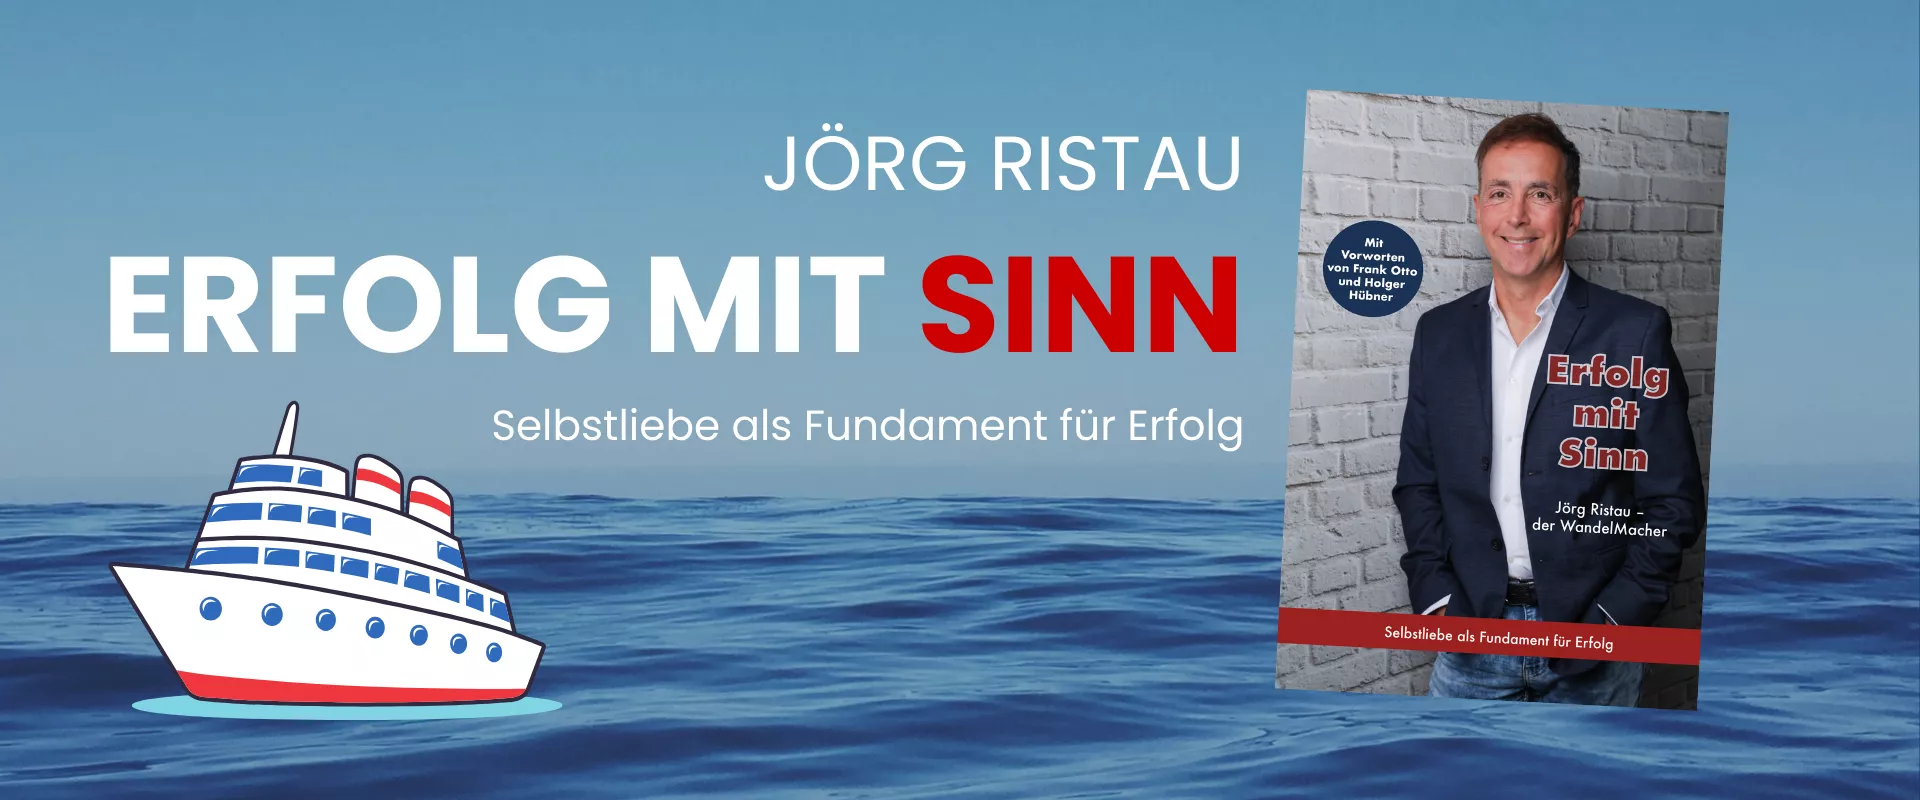 Erfolg mit Sinn (Jörg Ristau)